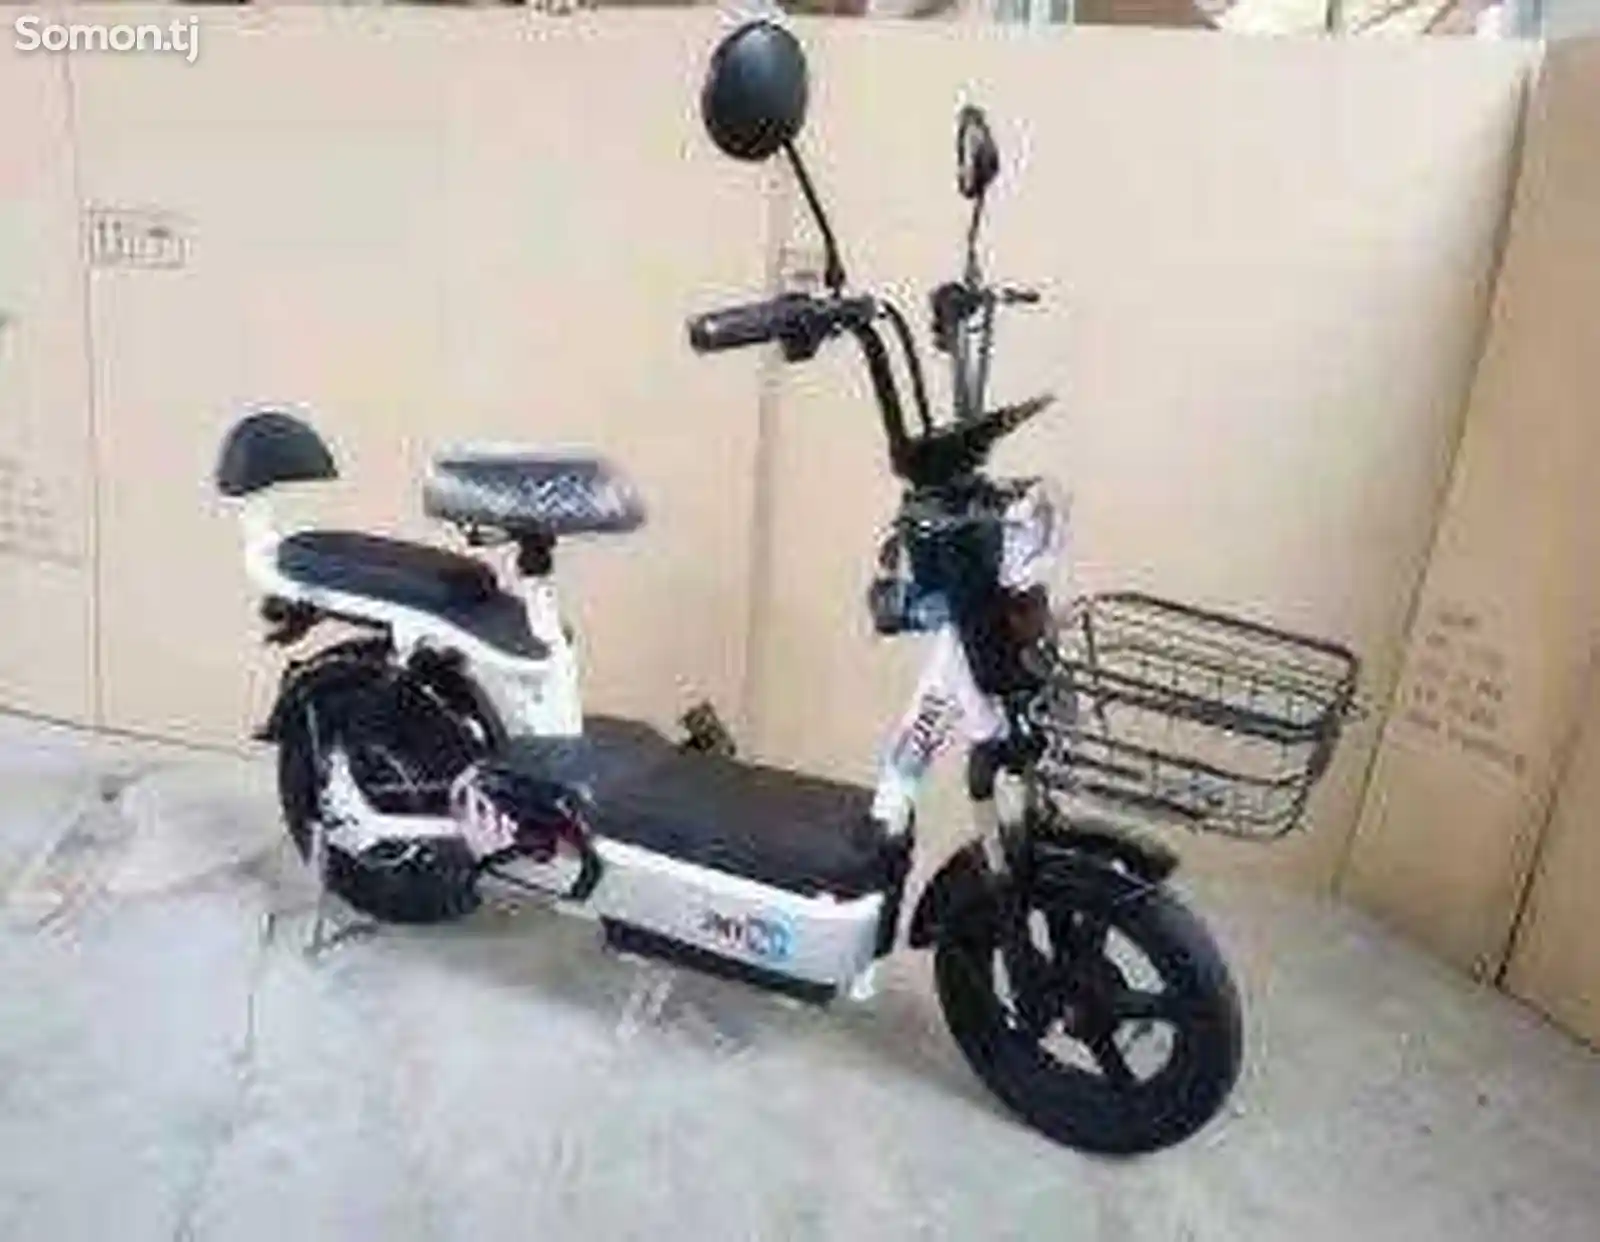 Электрический скутер